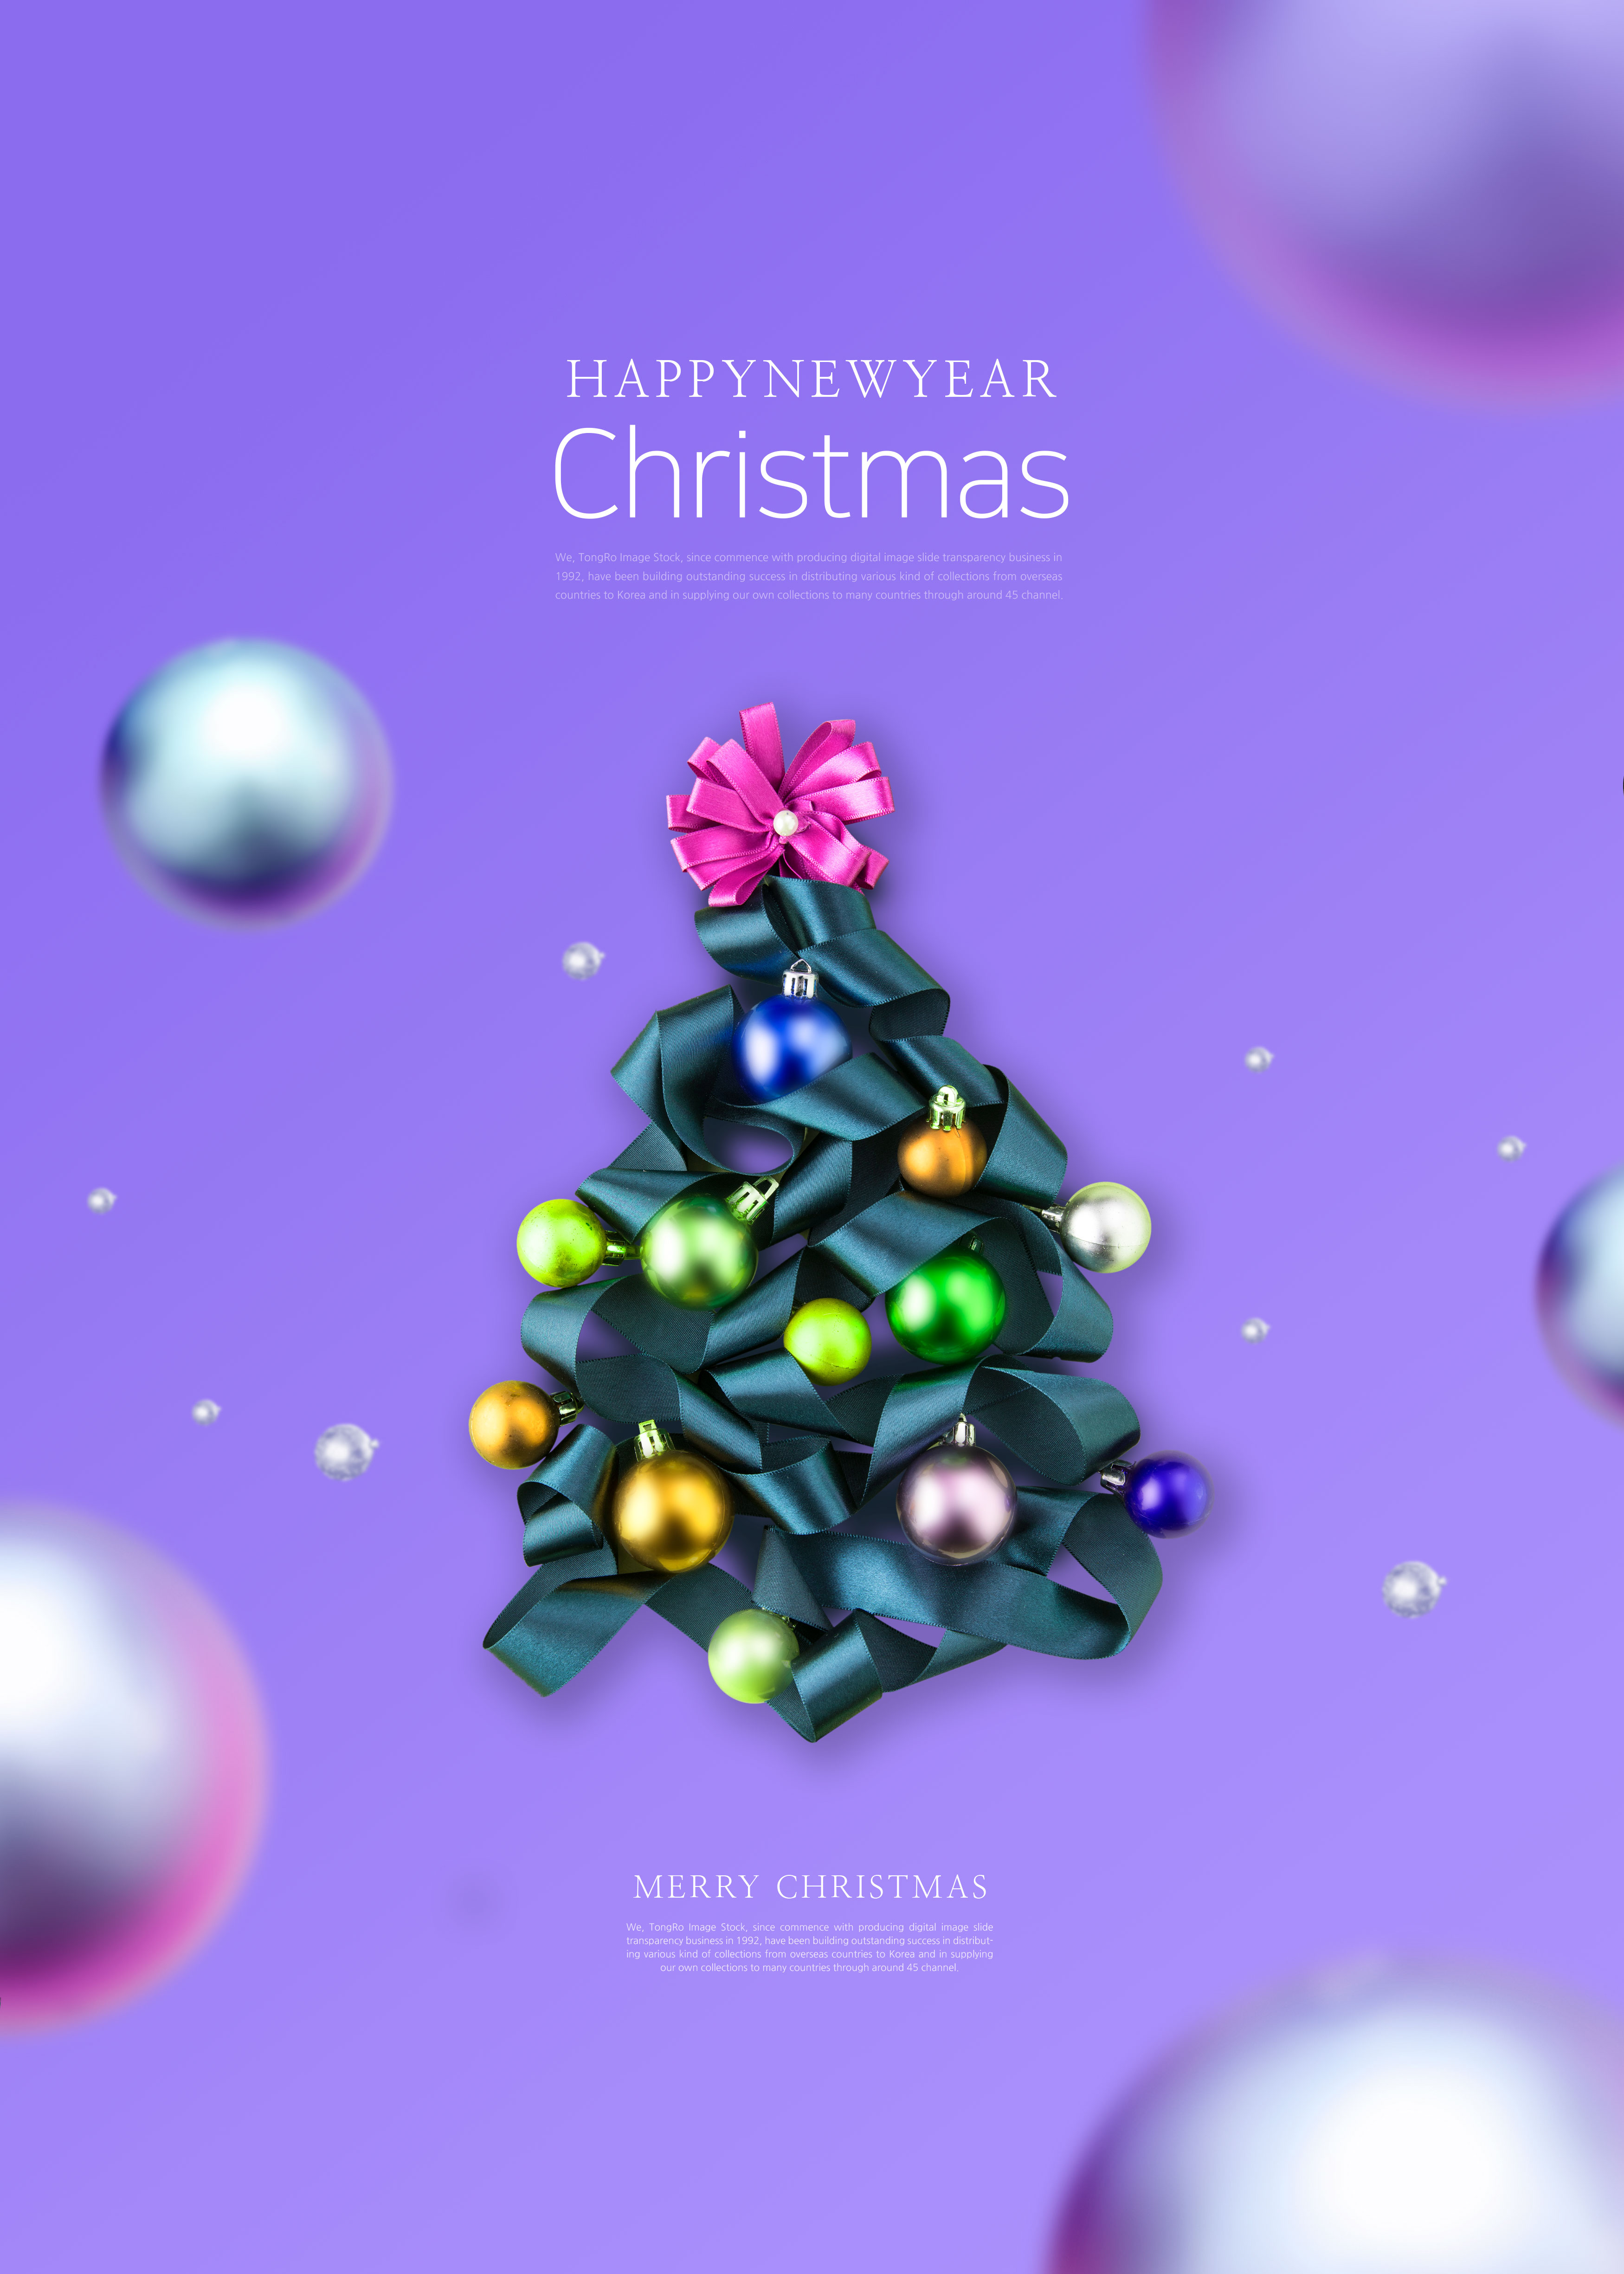 彩球圣诞树圣诞祝福海报/传单psd素材插图